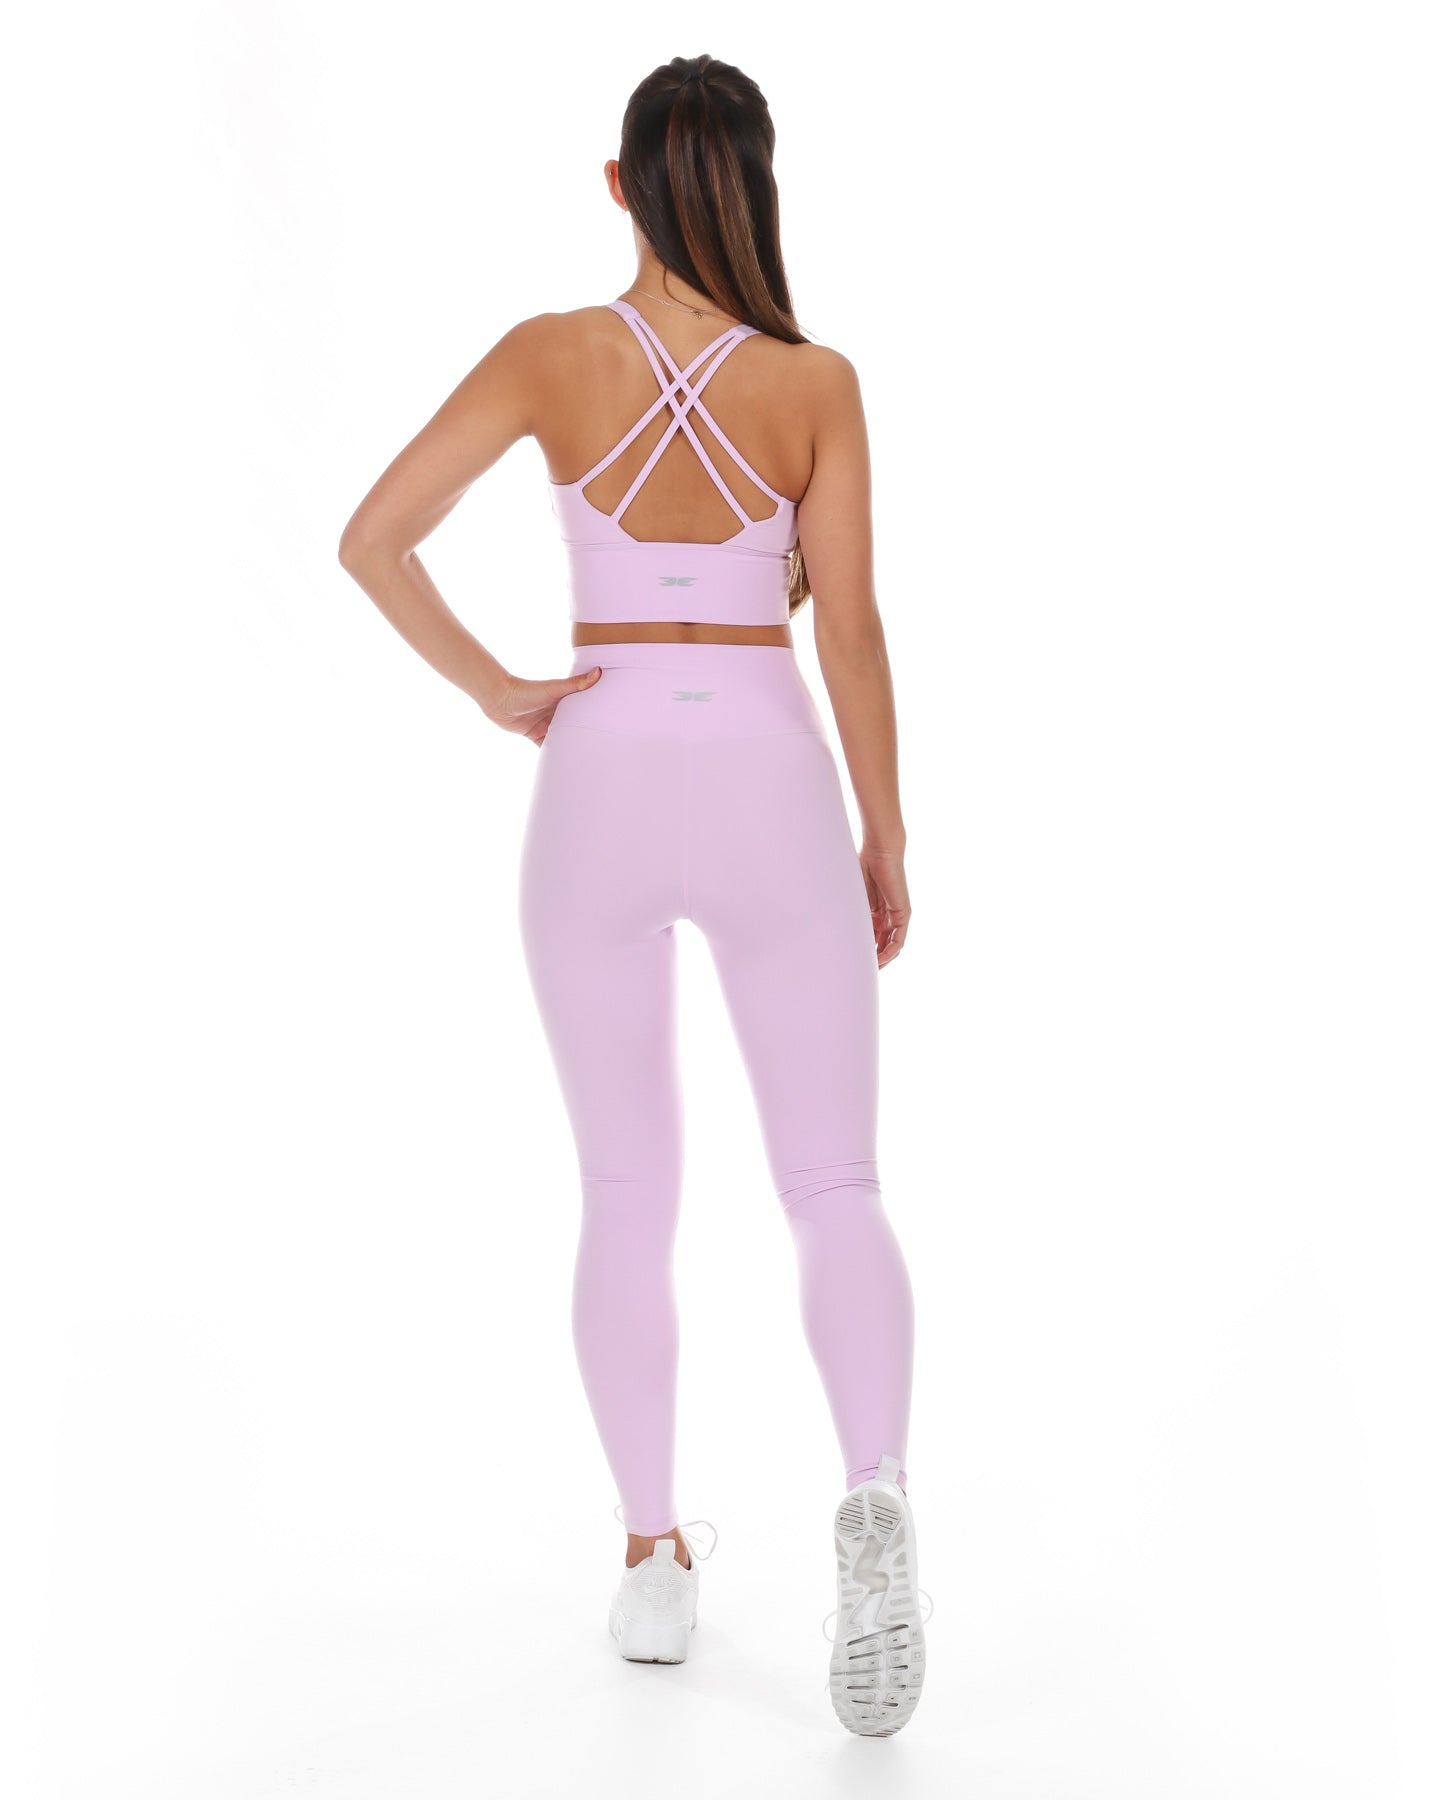 Aura Support Bra - Pastel Pink – Elite Eleven